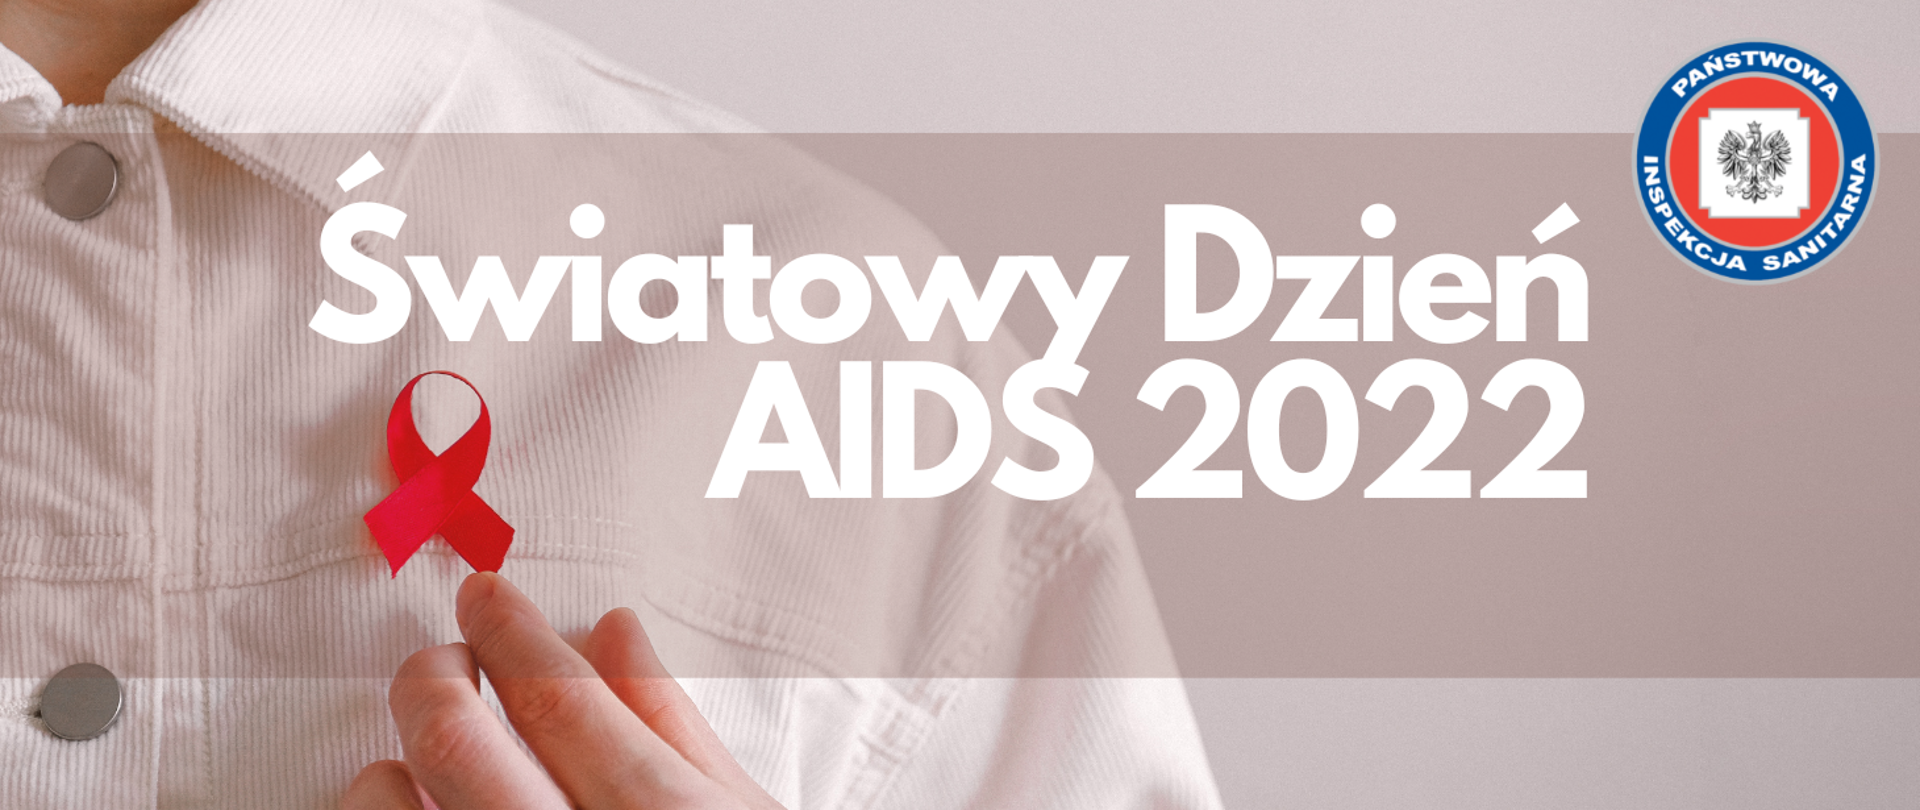 Światowy Dzień AIDS 2022. W tle zdjęcie człowieka w kurtce z przypiętą czerwoną wstążeczką. W prawym górnym rogu logo PIS.